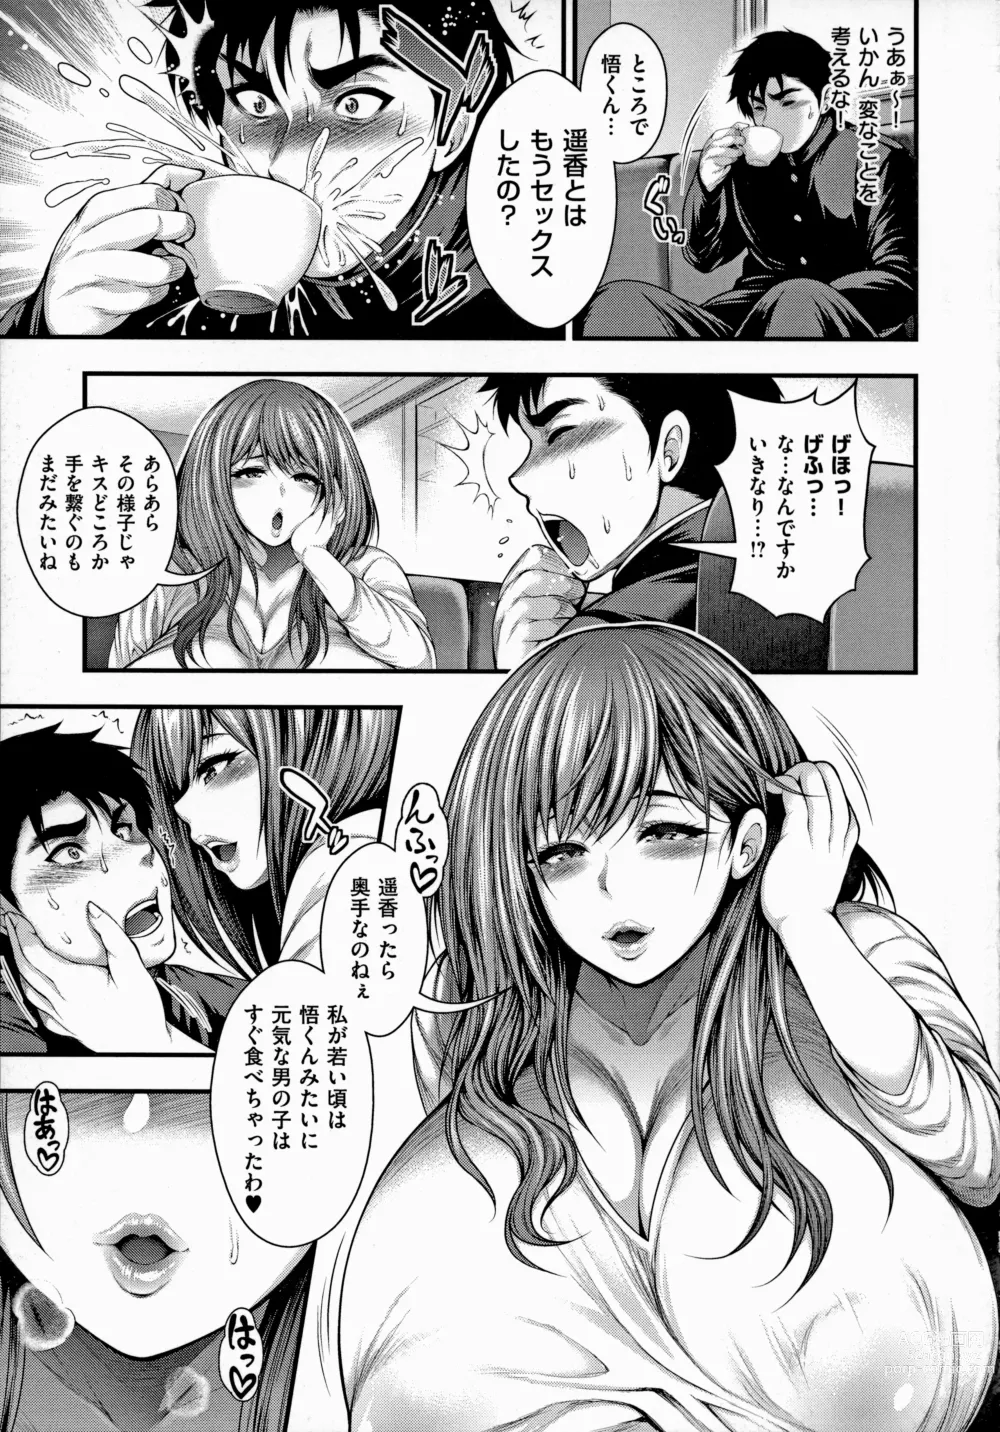 Page 9 of manga Arigatou, Kami Chichi.